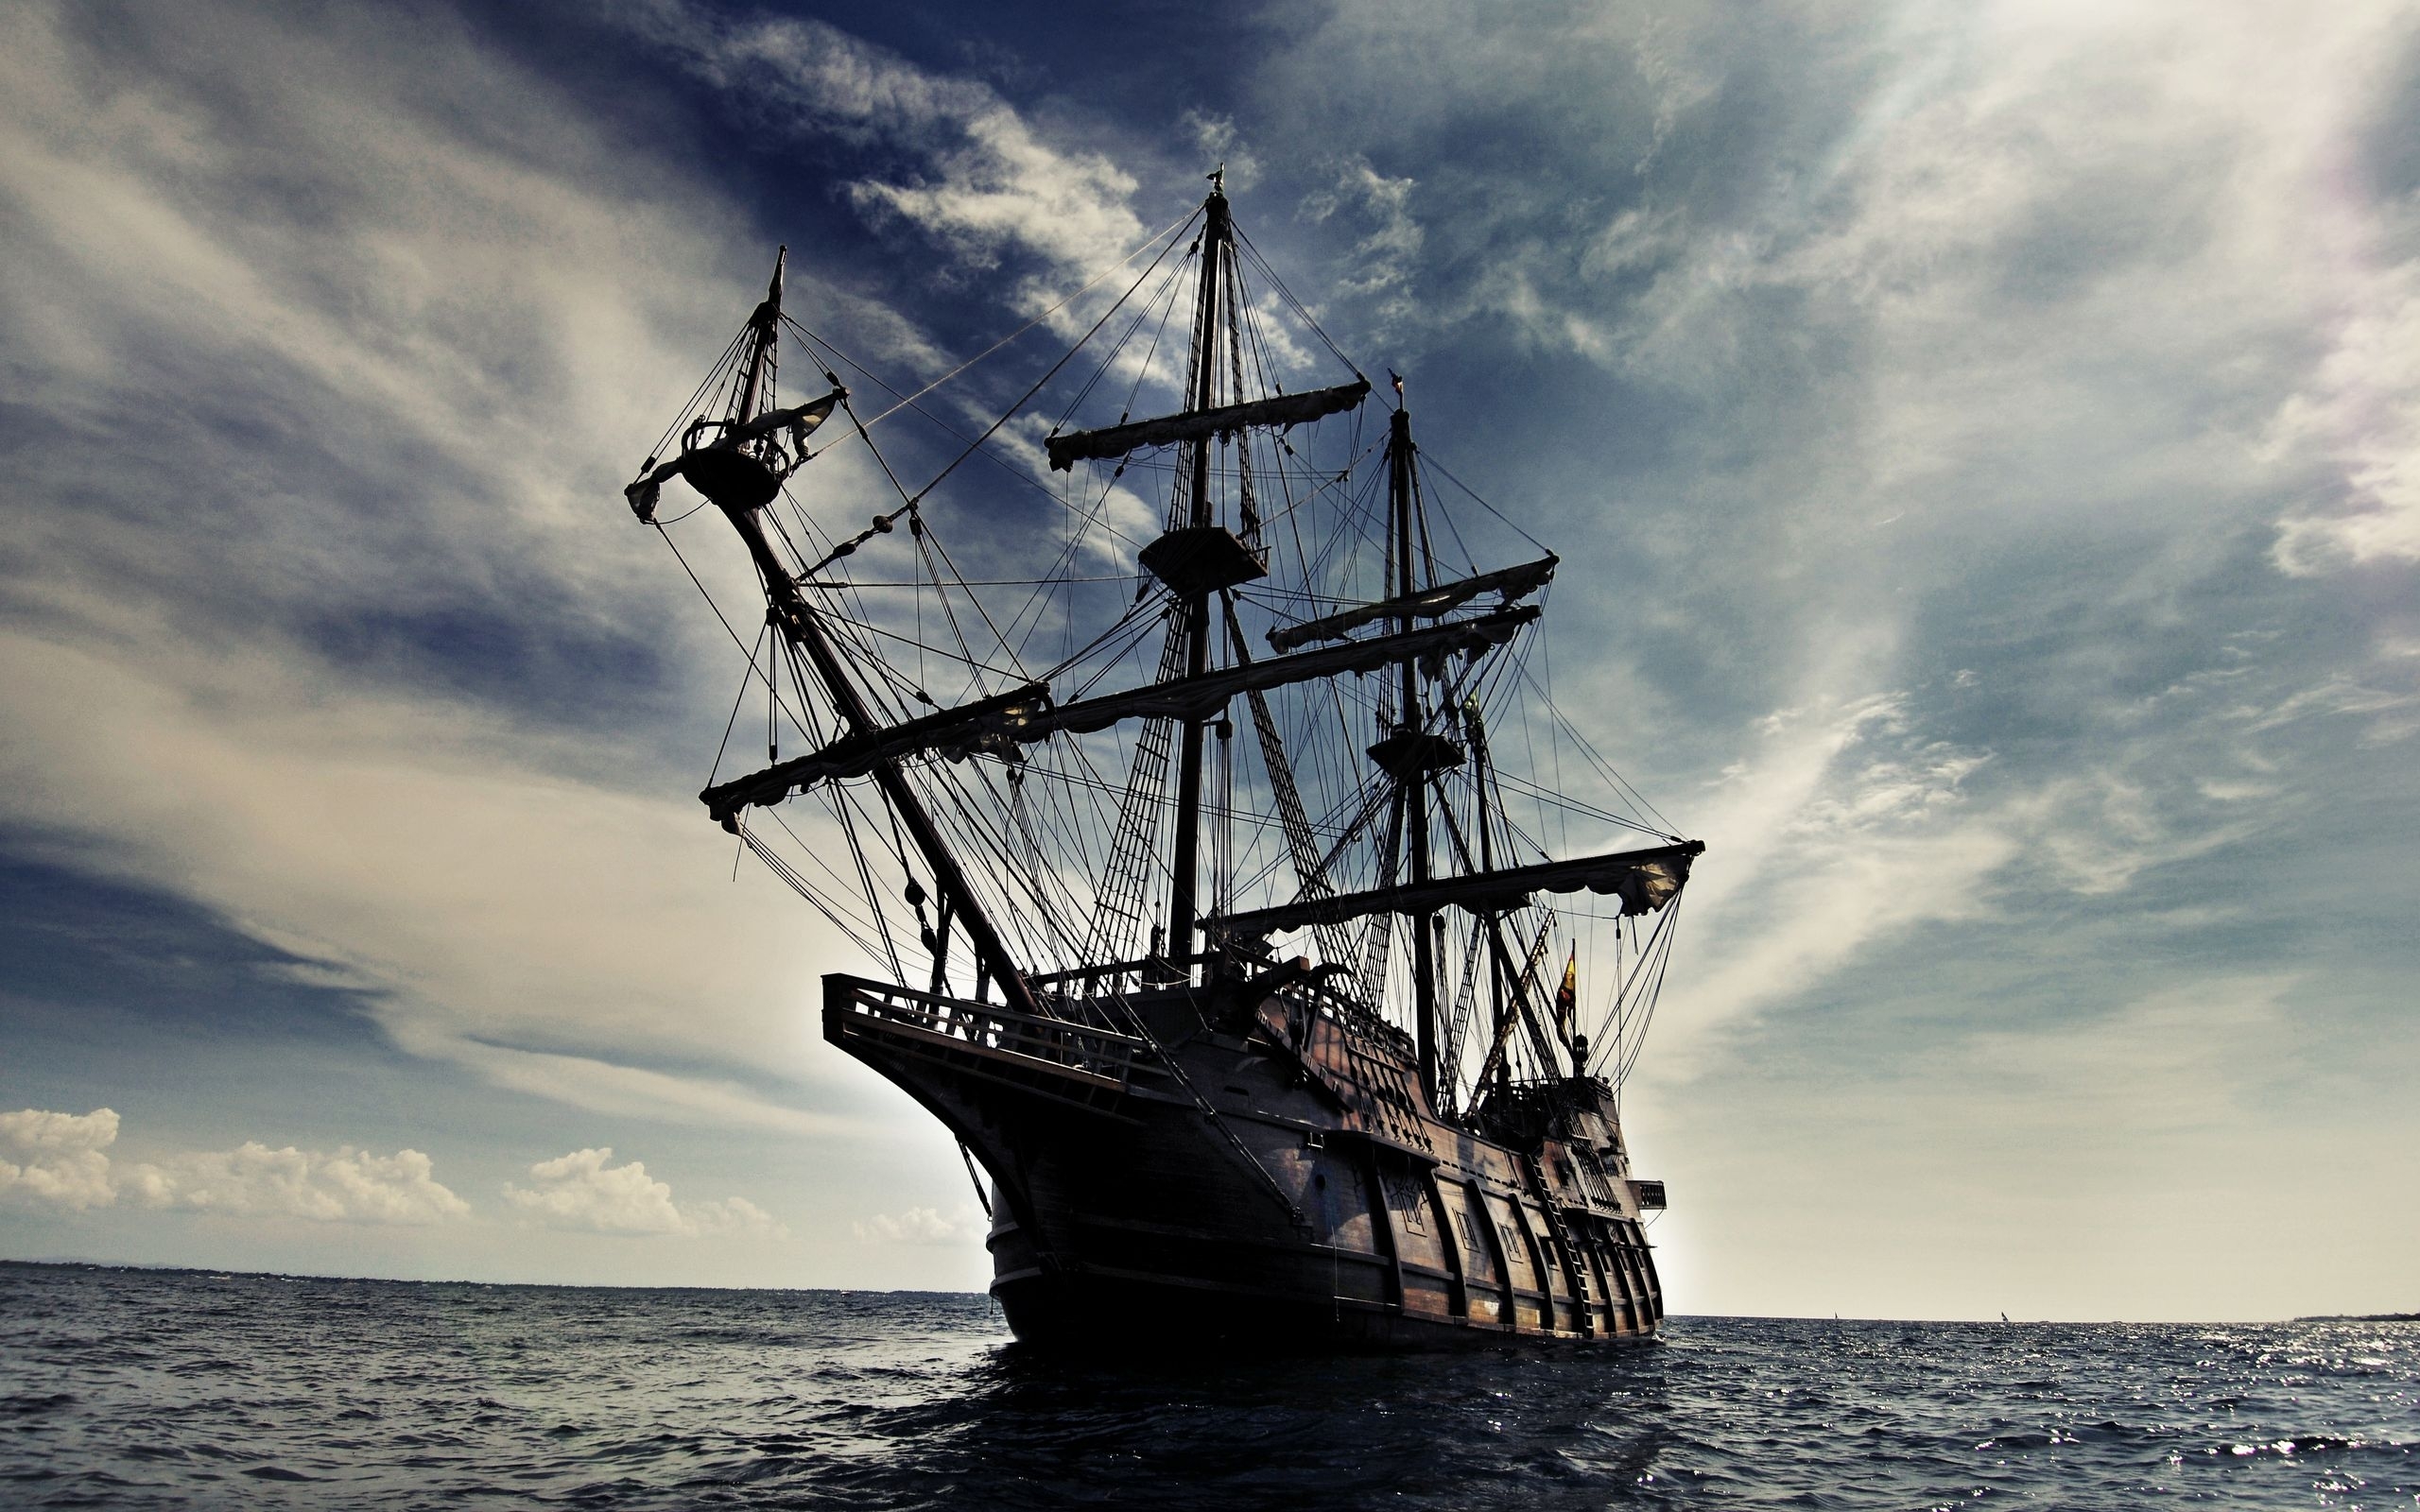 Popular Ships background images